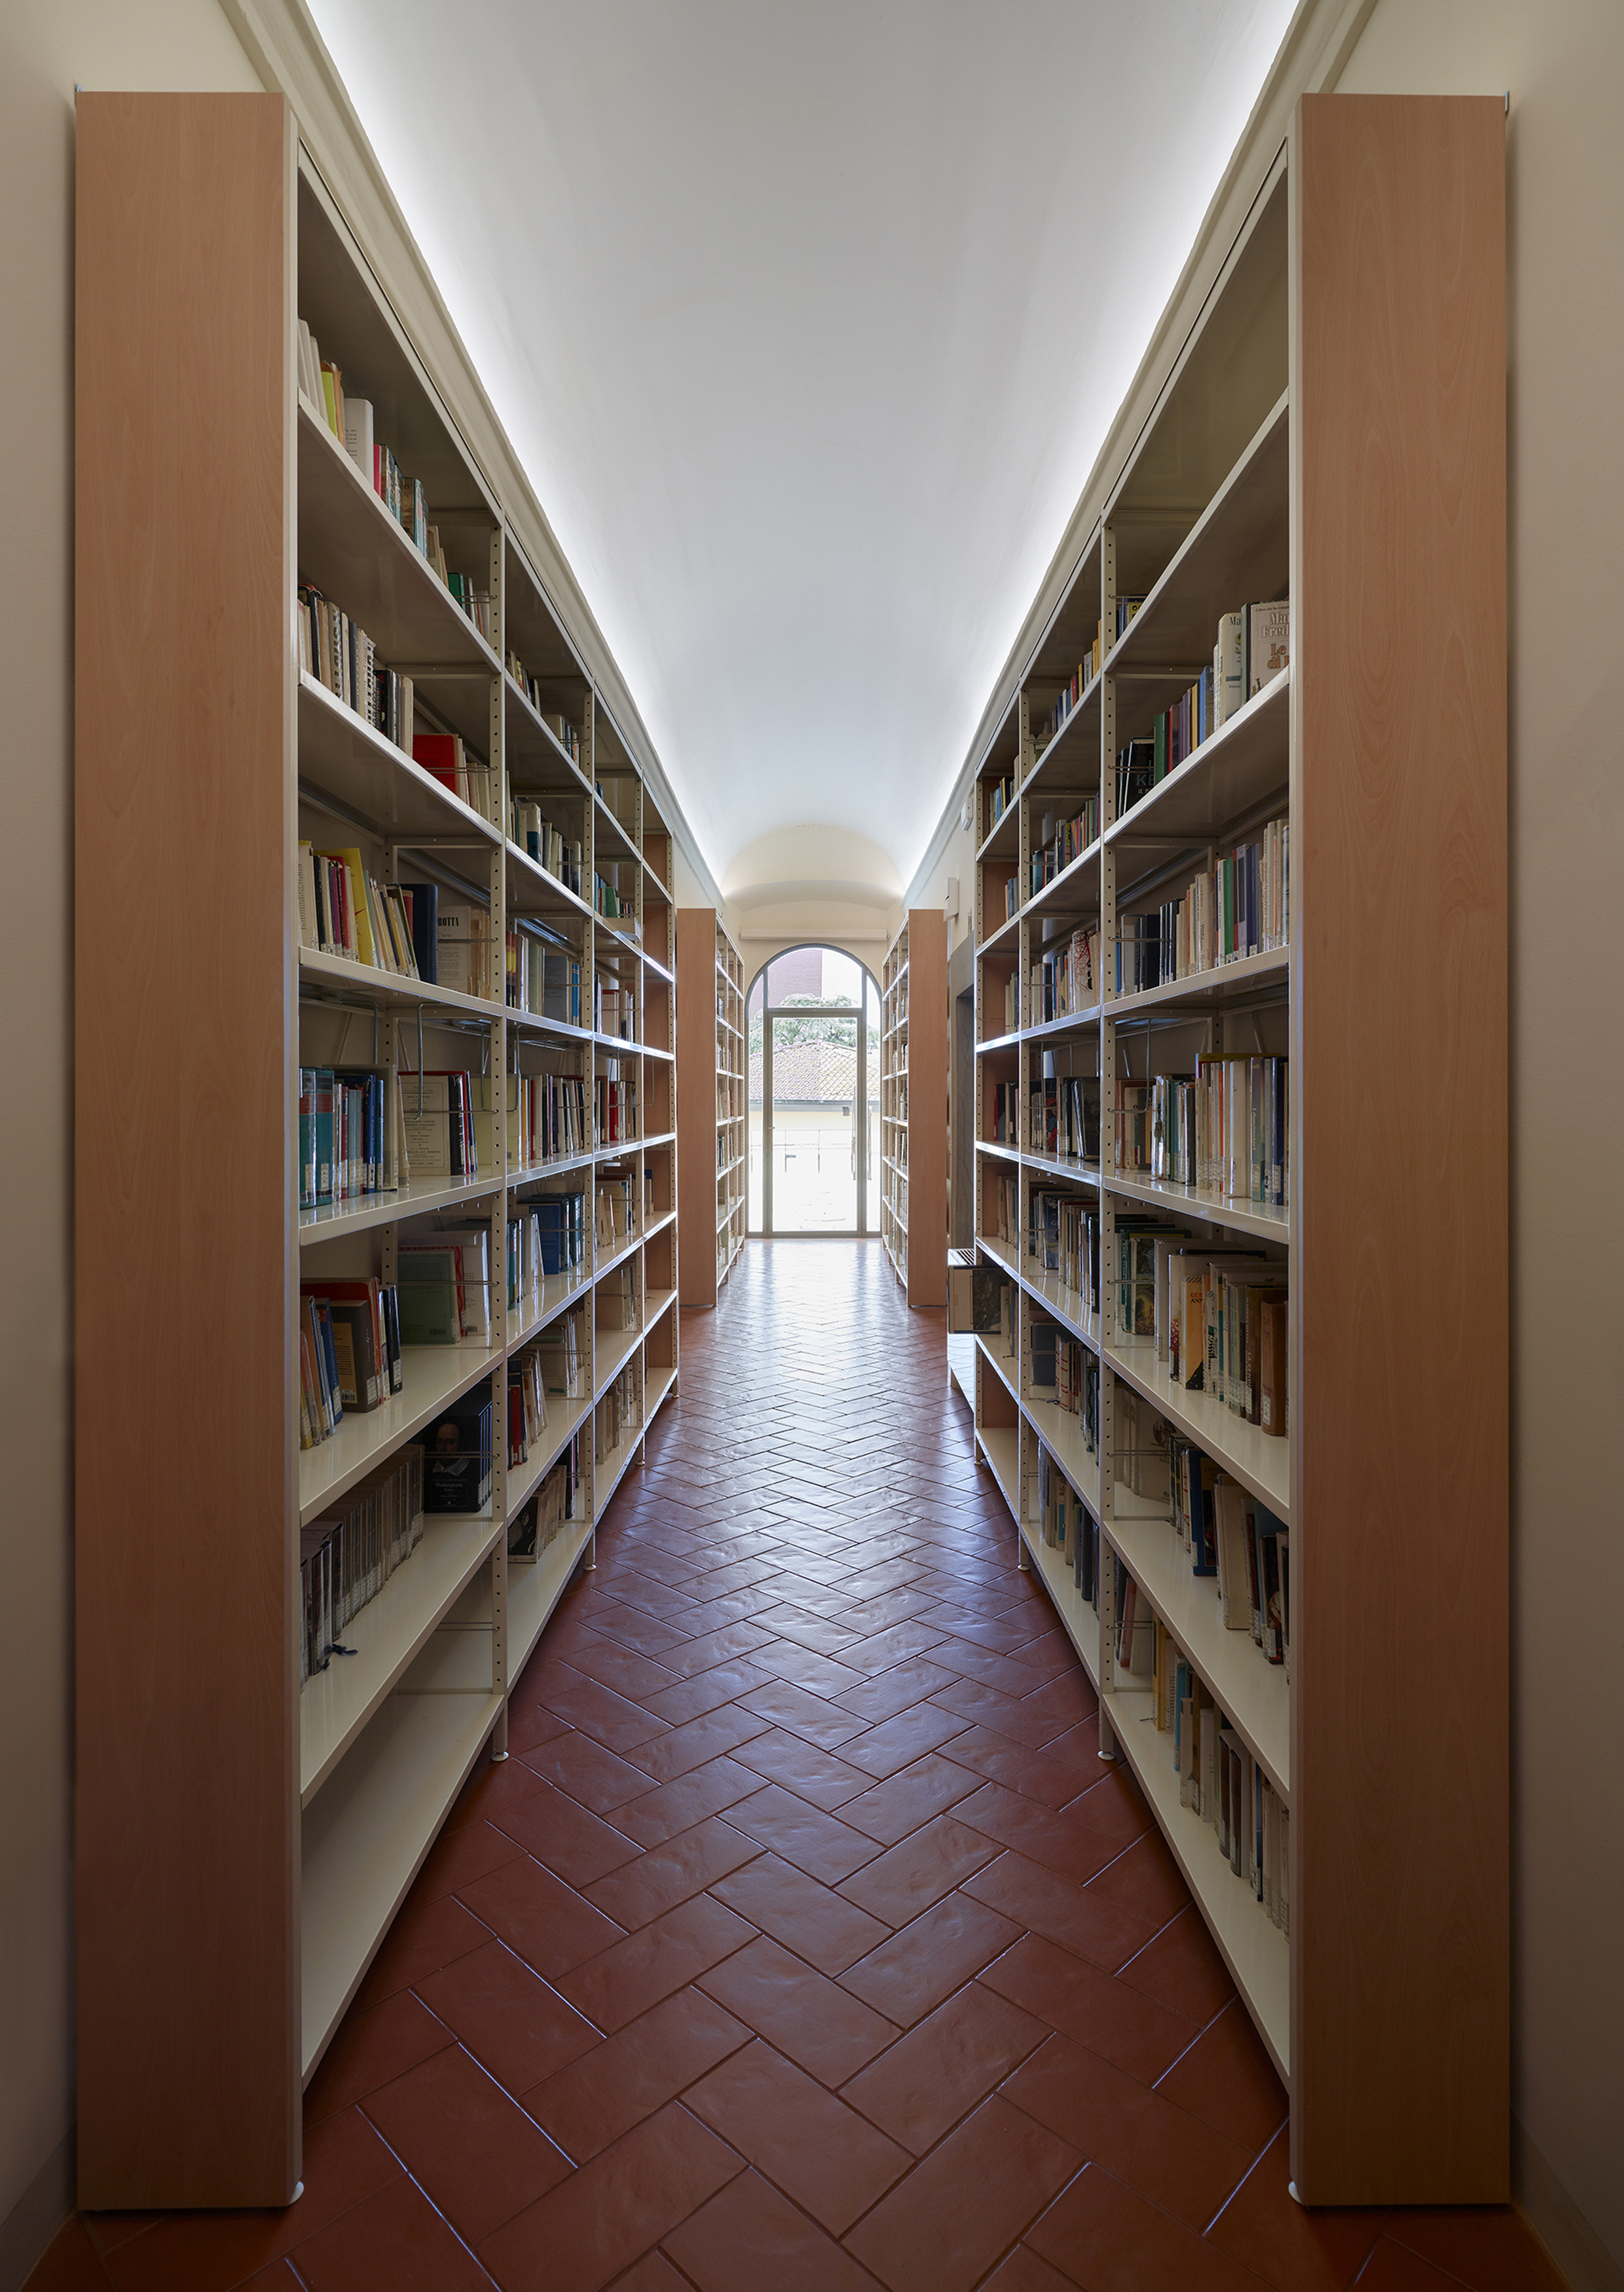 Biblioteca Comunale “Aldo Carrara”